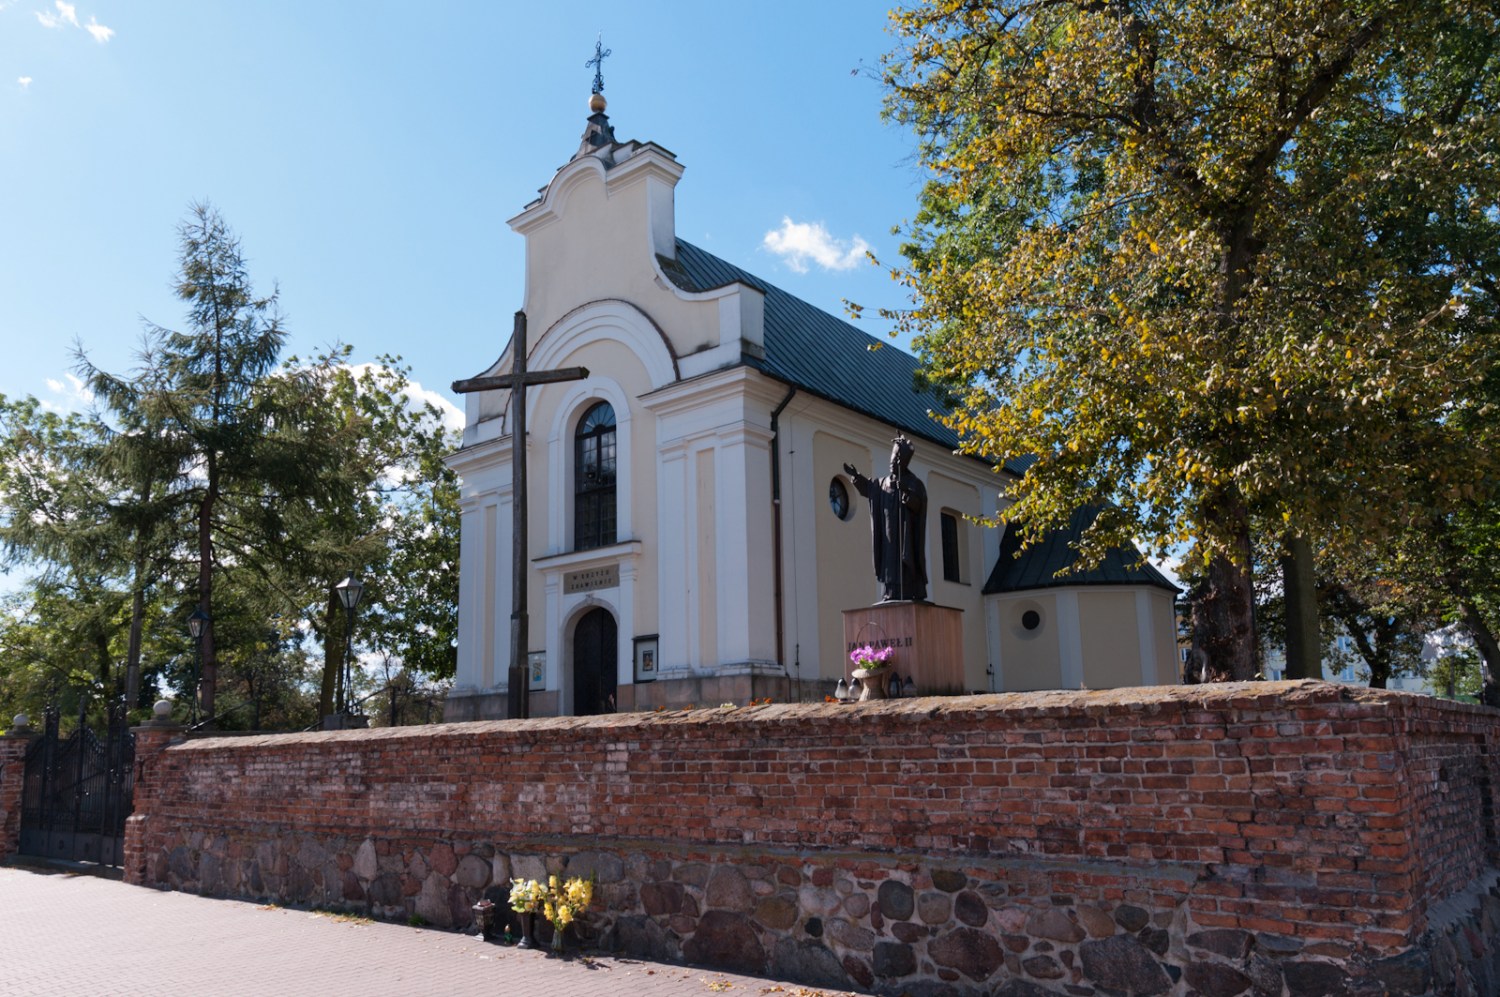 Góra Kalwaria, kościół Podwyższenia Krzyża Świętego, fot. Piotr Moroz/wikimedia.org